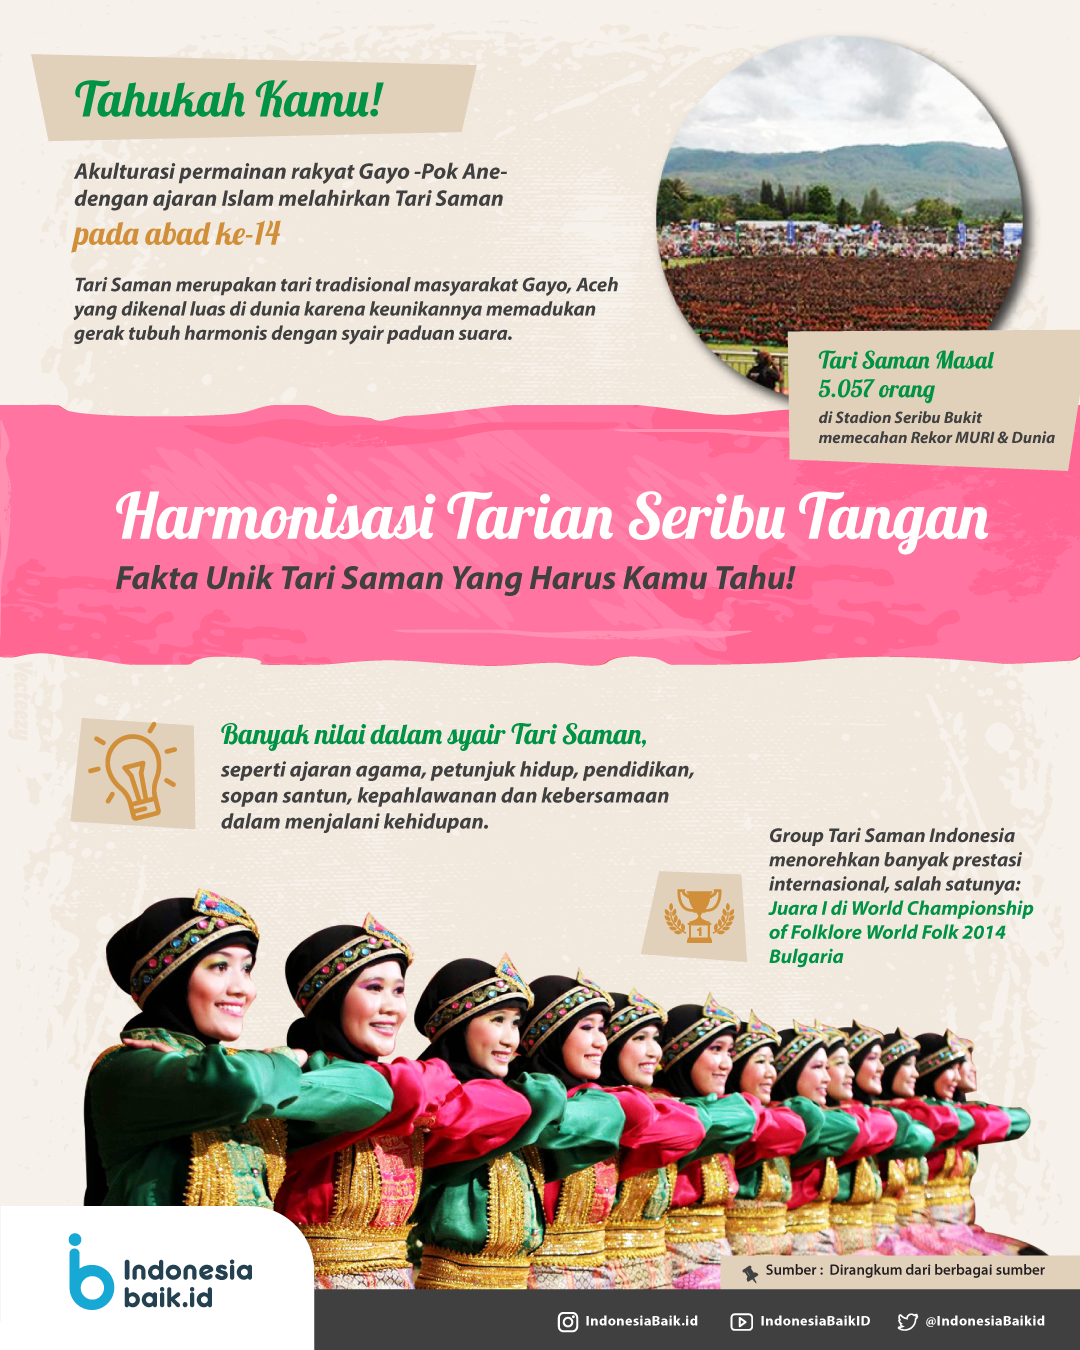 Tari Saman, Harmonisasi Tarian Seribu Tangan | Indonesia Baik